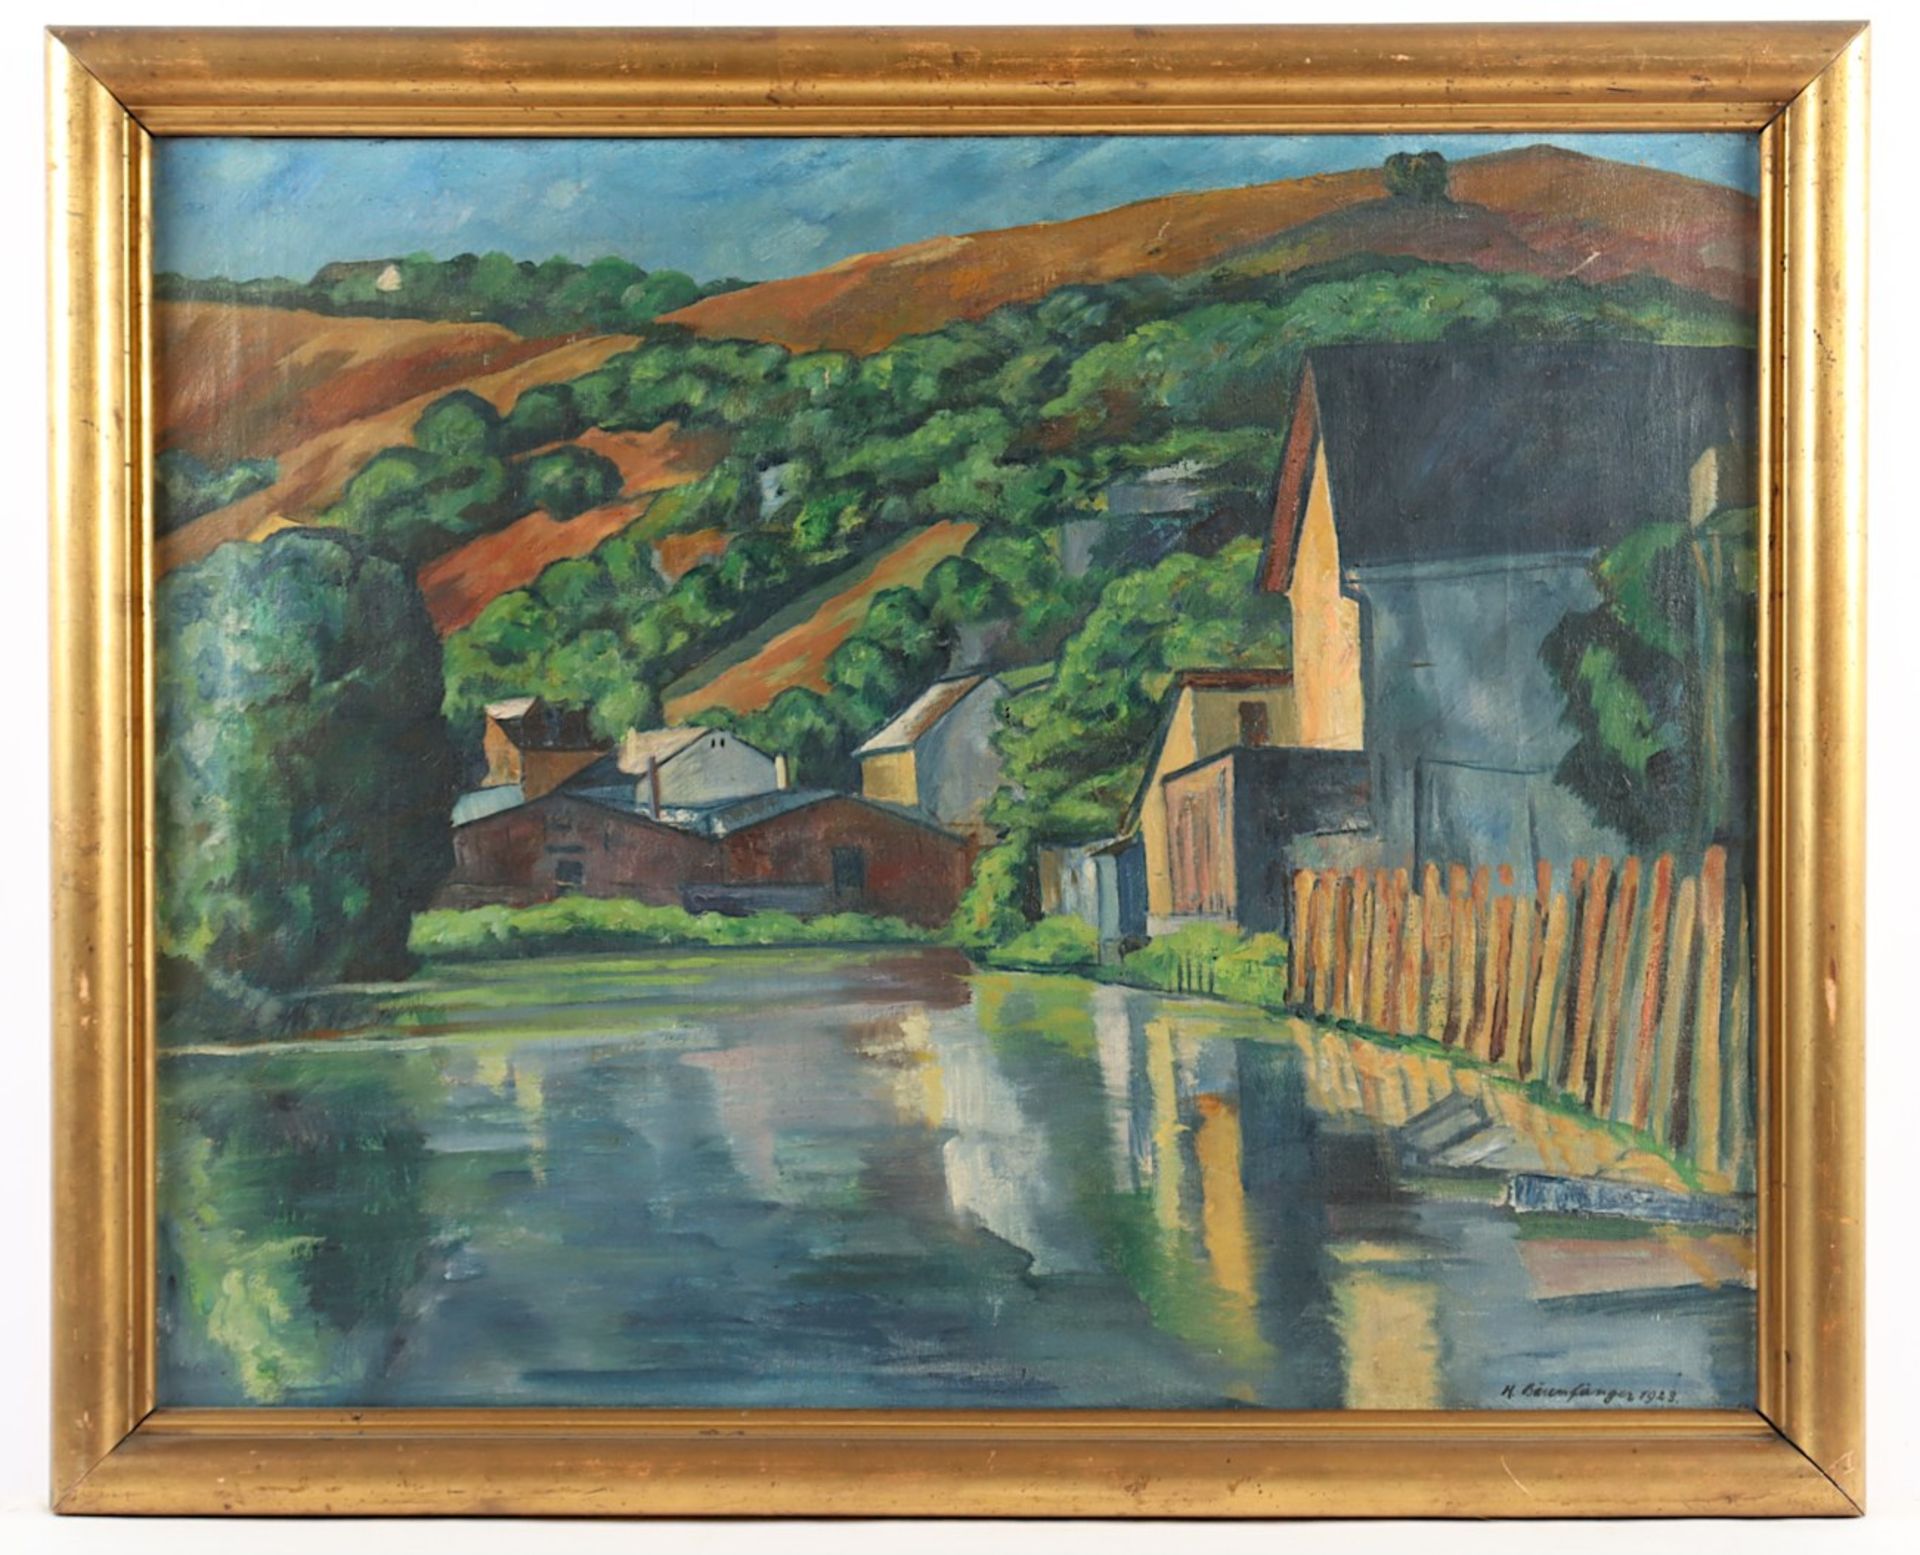 BÄRENFÄNGER, Karl (1888-1947), "Häuser am Fluss", Öl/Lwd., 60 x 76, besch., unten rechts signiert u